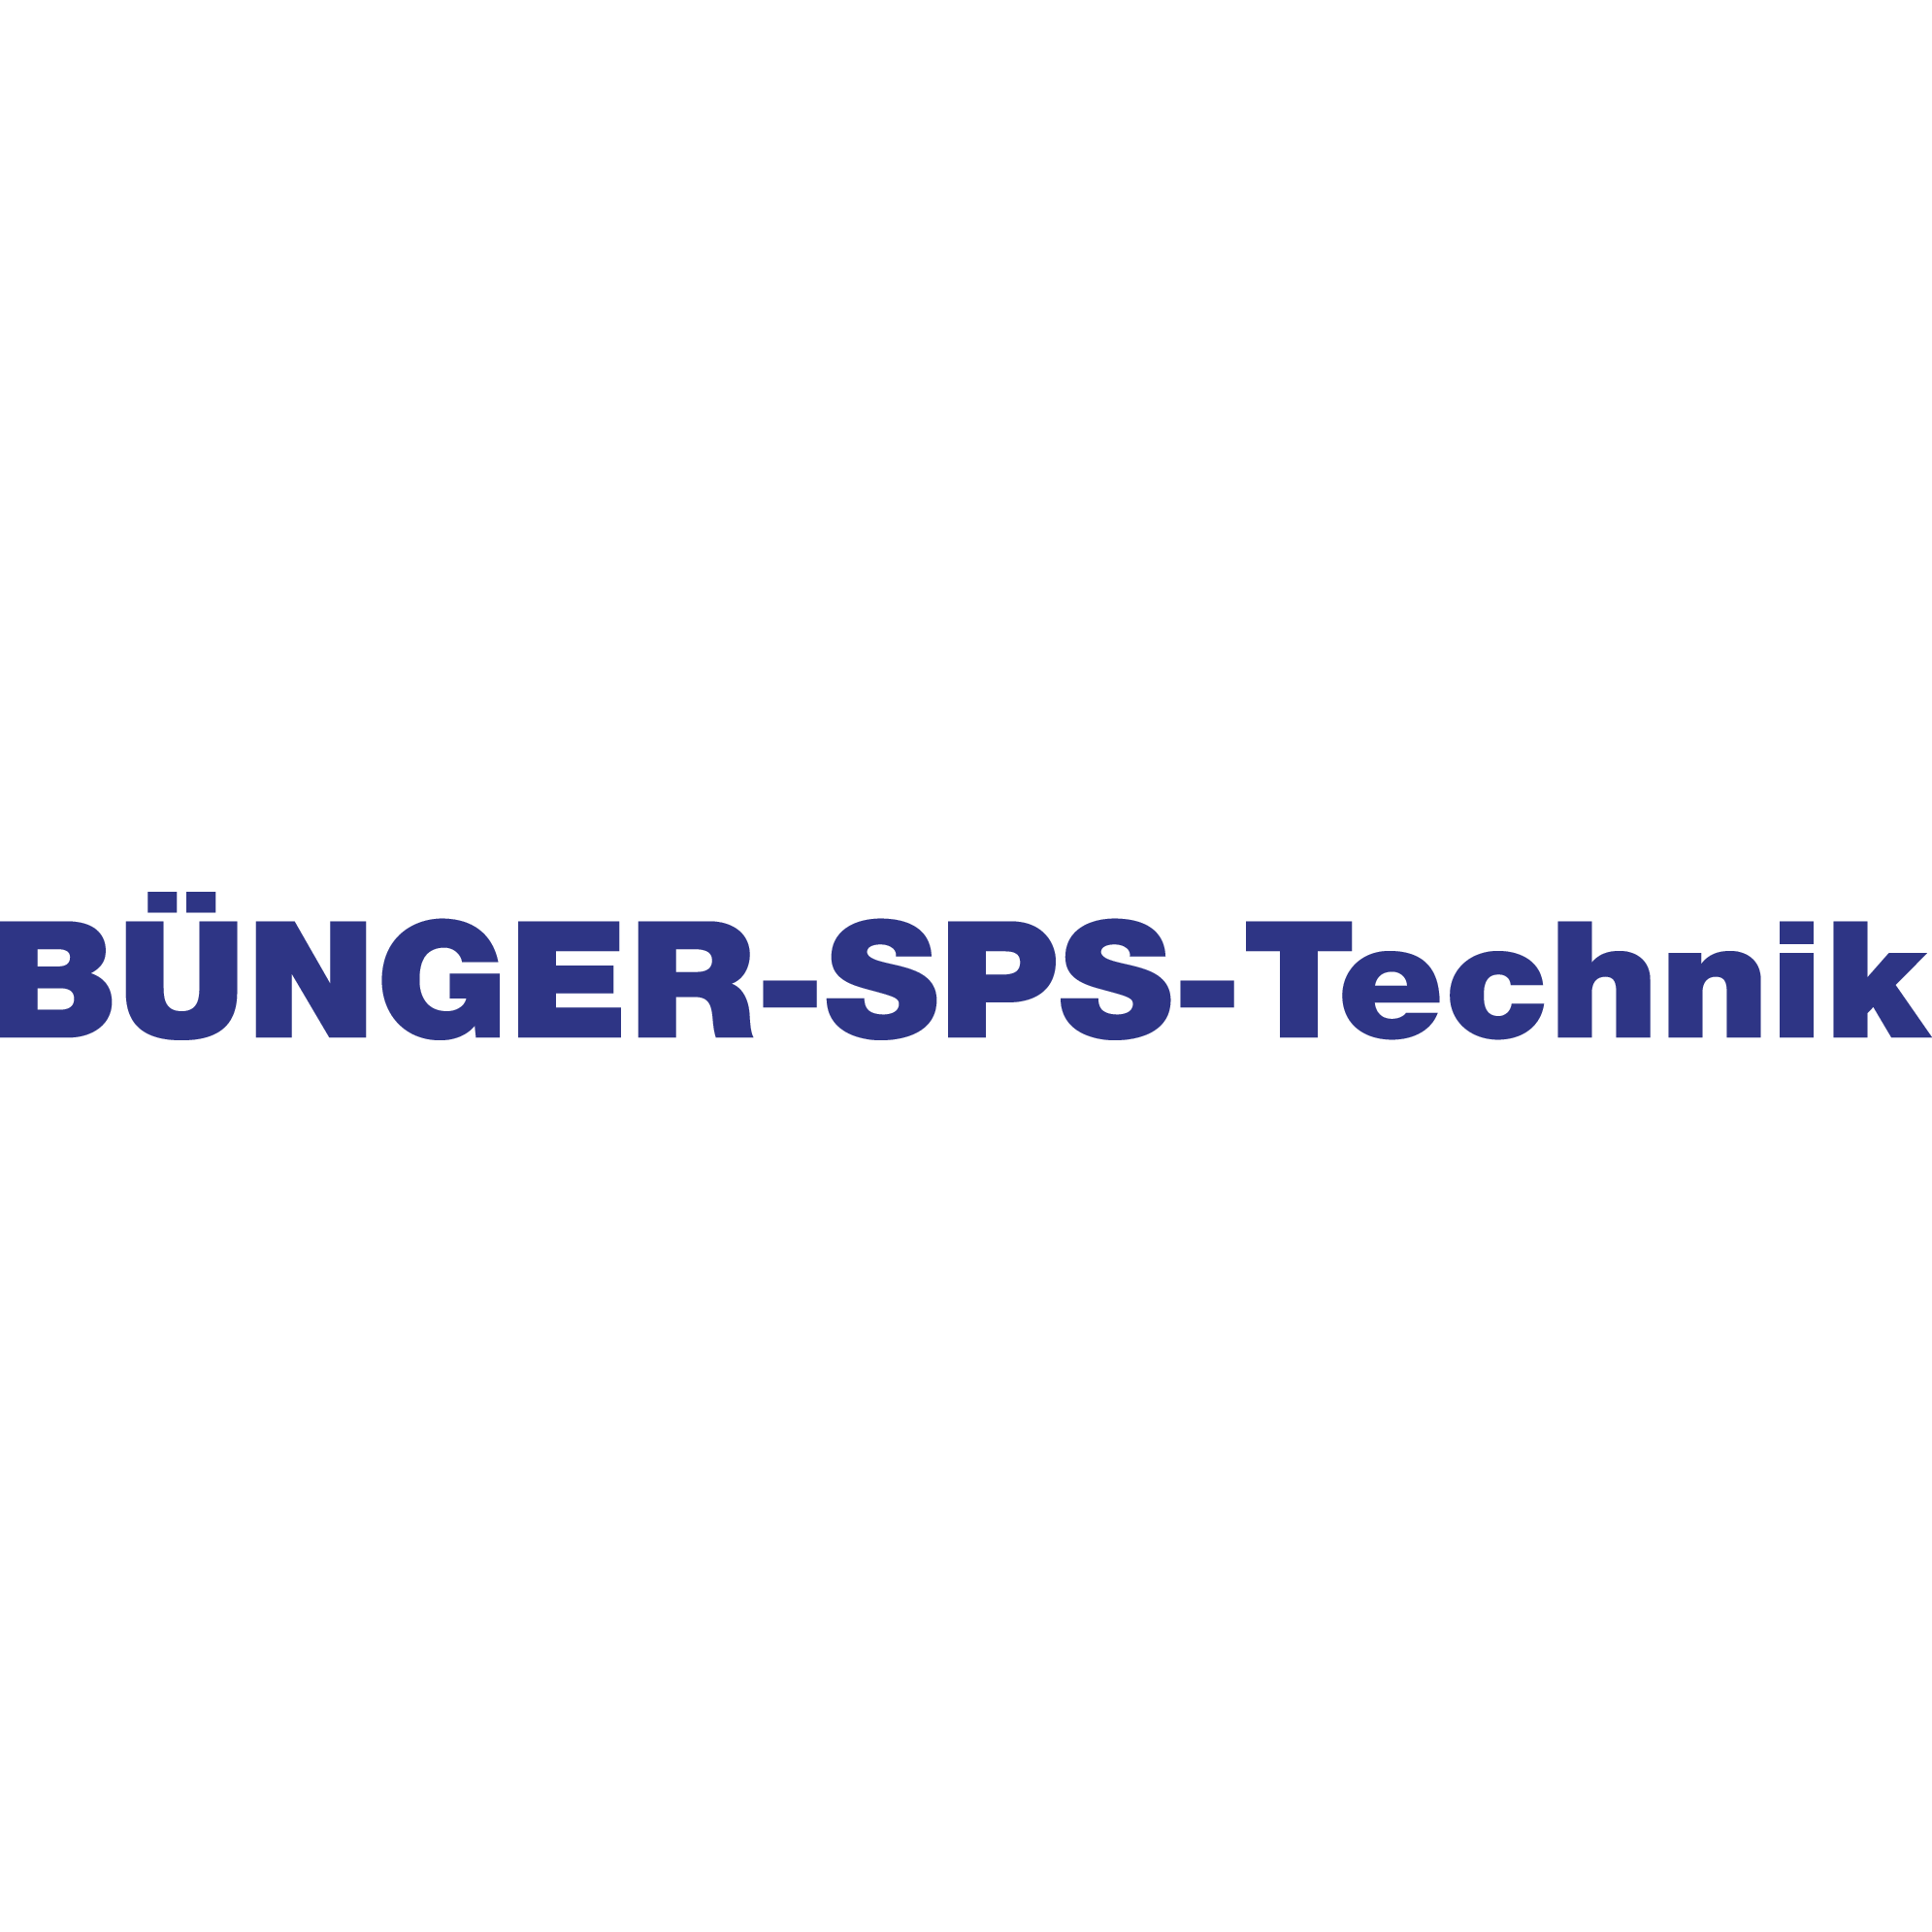 L. BÜNGER - SPS - Technik in Berlin - Logo